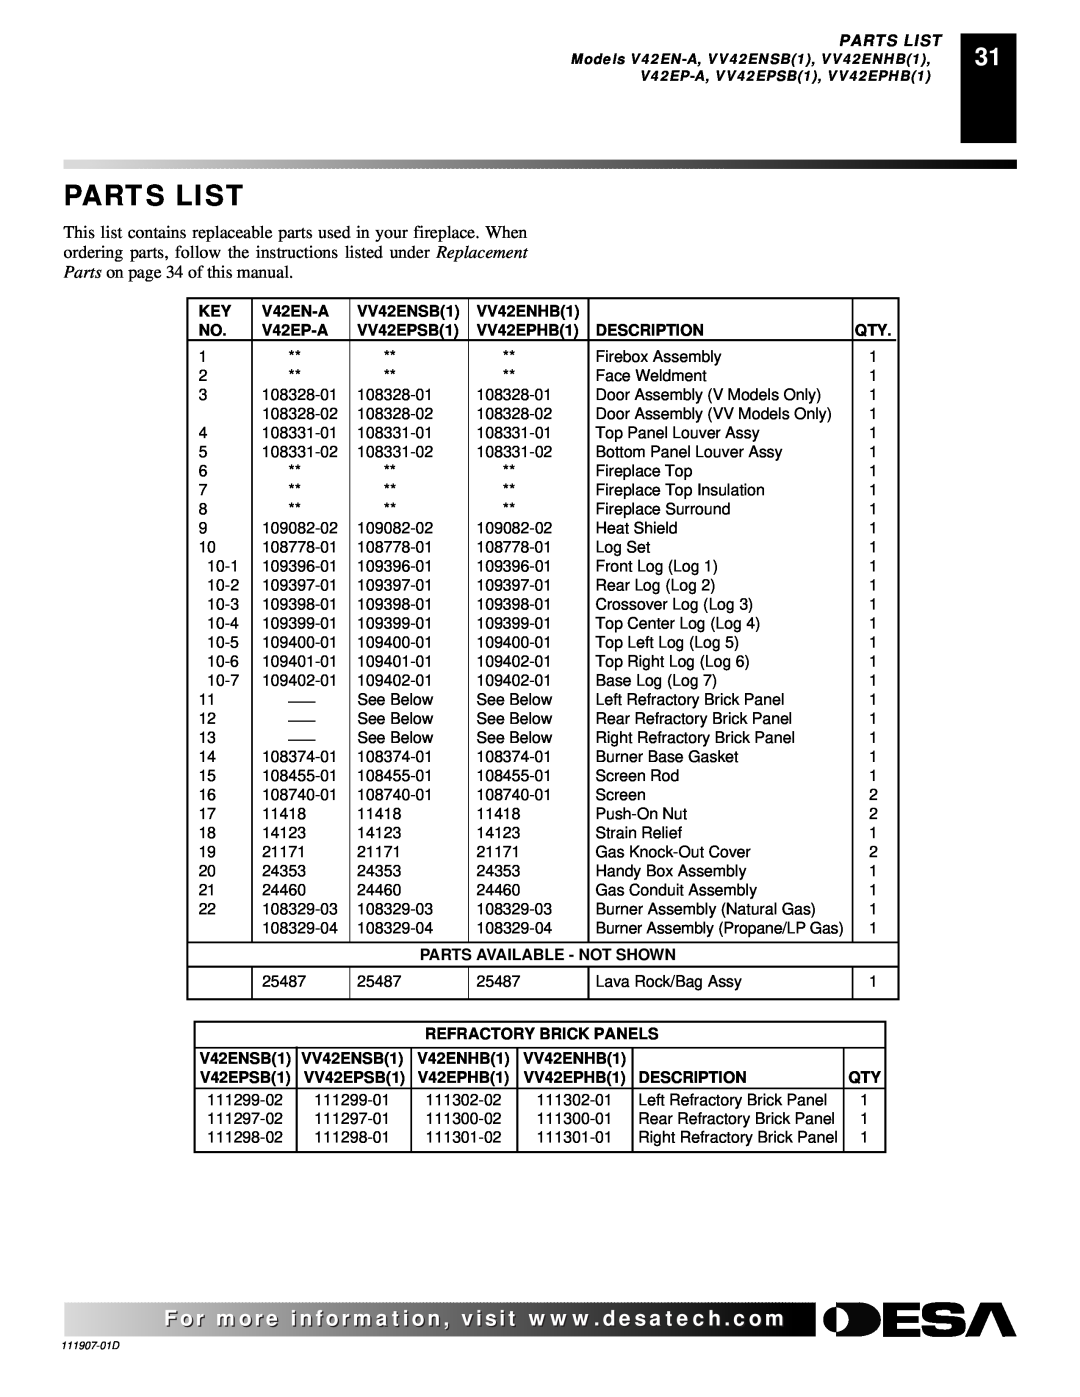 Desa V42EP-A, VV42ENB(1), VV42EPB(1), V42EN-A installation manual Parts List 